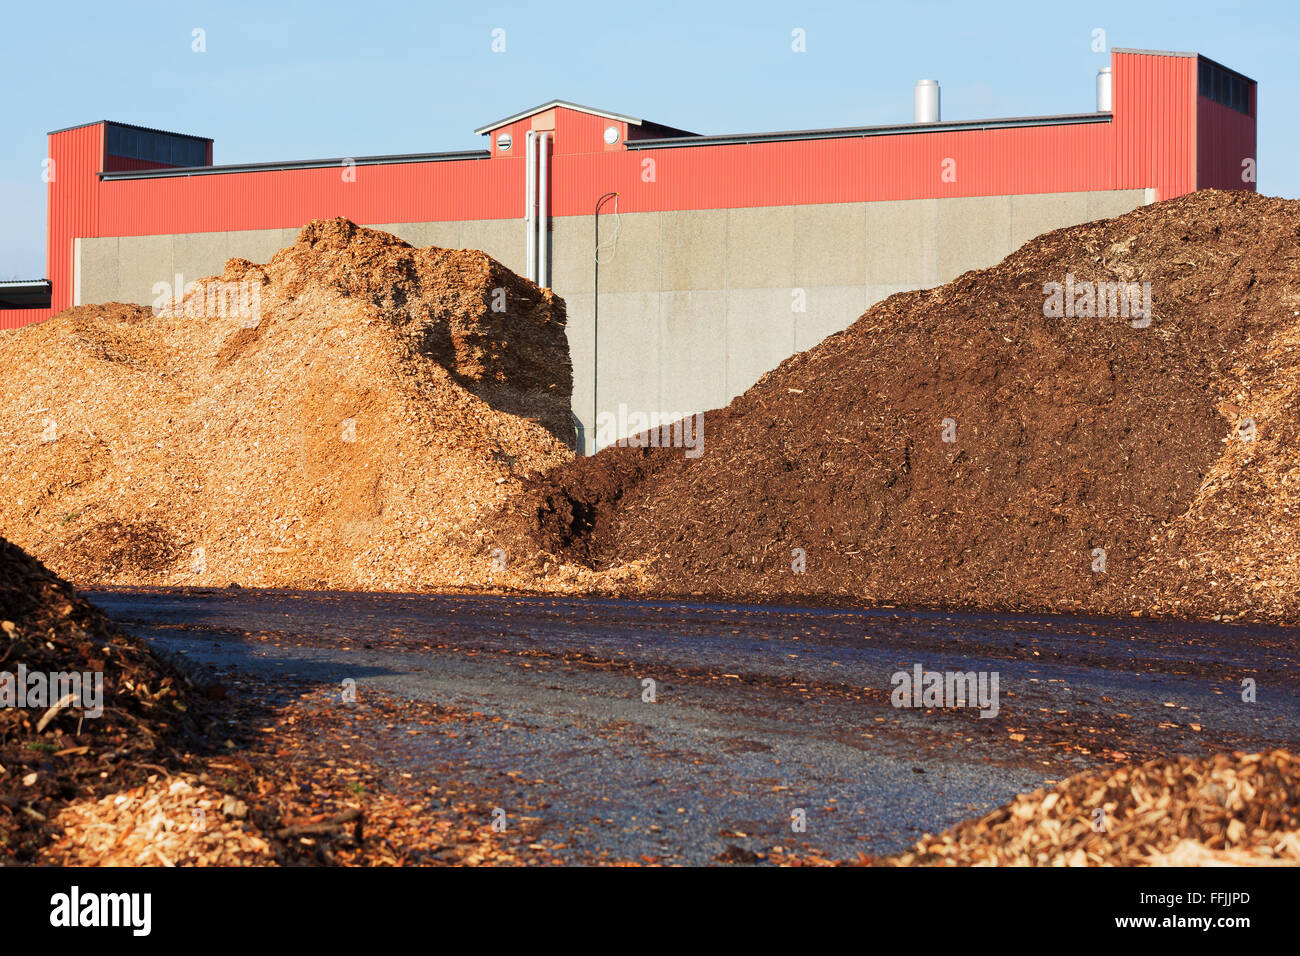 Pile di trucioli di legno usati come biocarburante in impianto di riscaldamento. Edificio industriale in background. Foto Stock